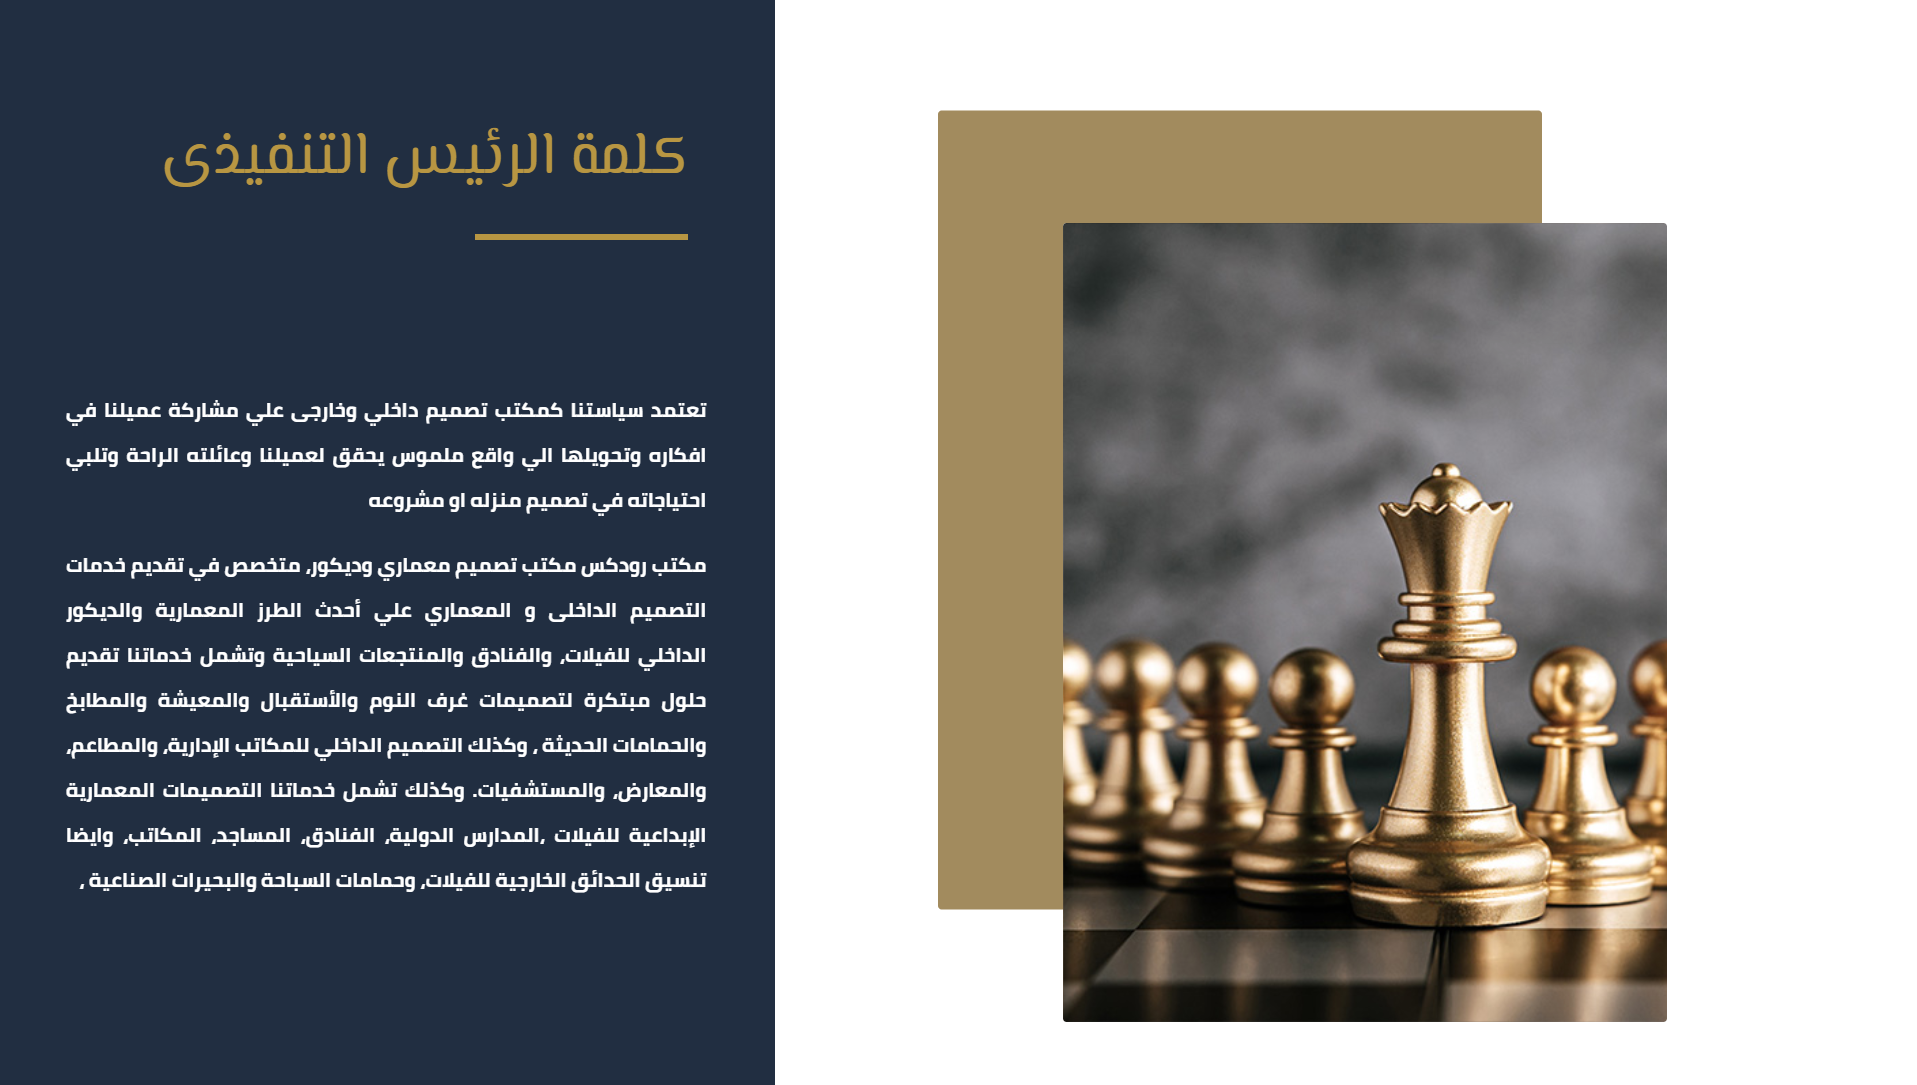 تصميم موقع الكتروني لشركة تصميم معماري وتصميم داخلي في الرياض السعودية